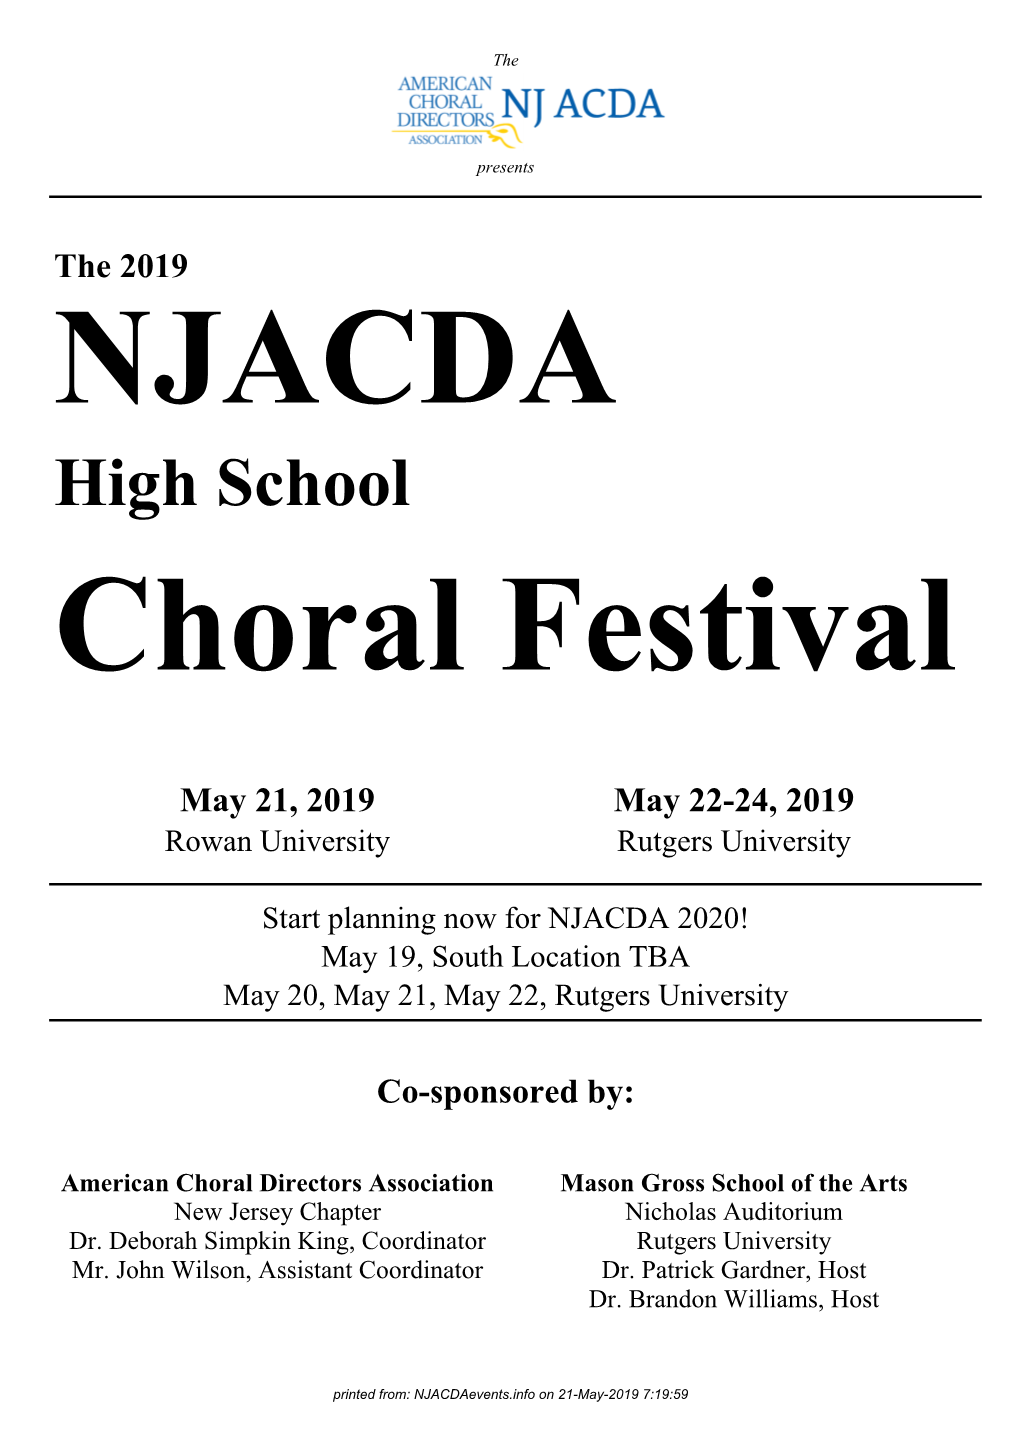 High School Choral Festival